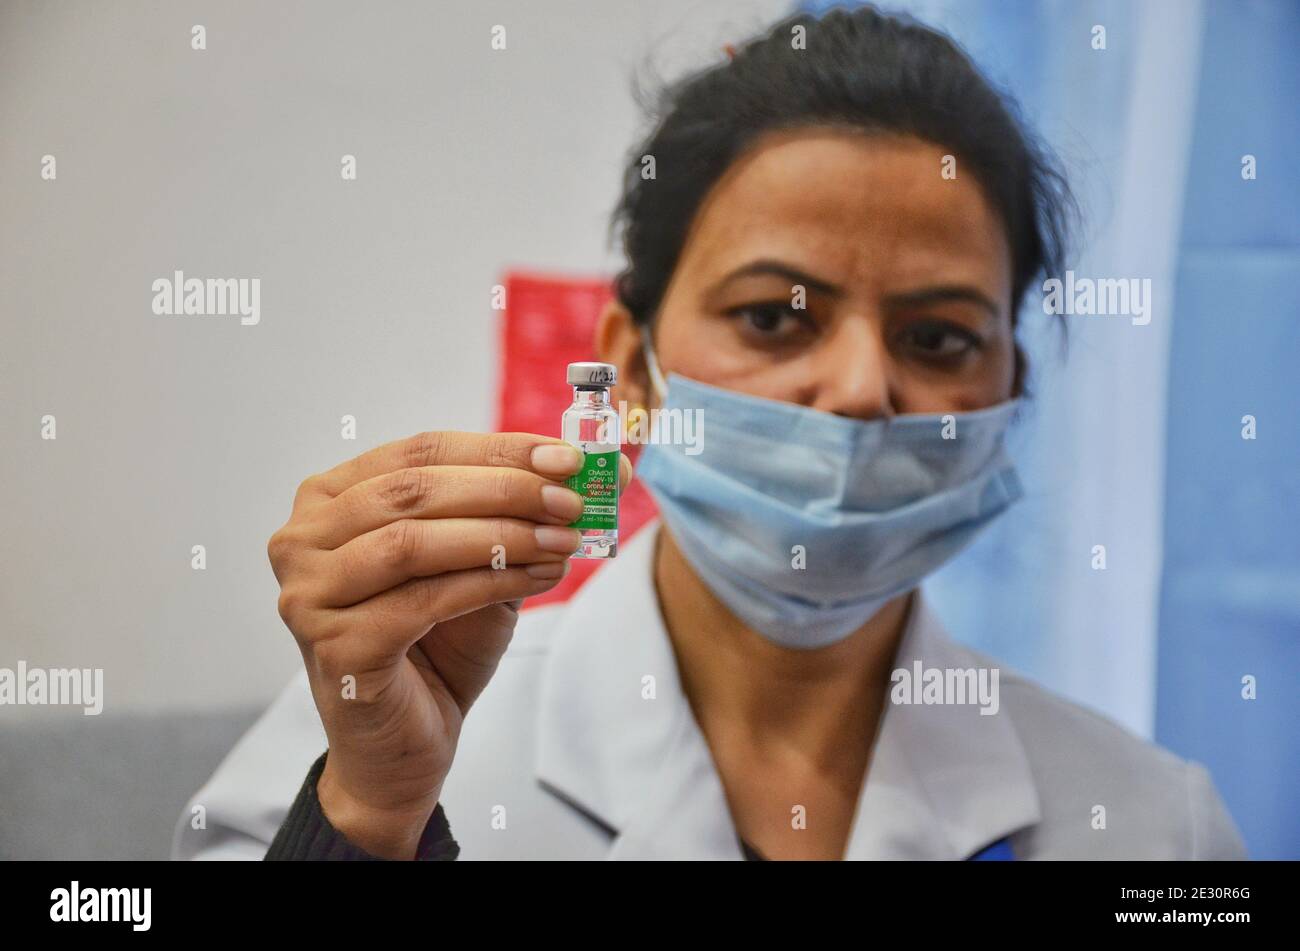 Ein indischer Gesundheitshelfer, der am 16. Januar 2021 in einem Krankenhaus in Jammu eine COVID-19-Impffläschchen Covishield während der Impfung in Indien vorstellte. (Foto von Bikas Bhagat / INA Photo Agency / Sipa USA) Stockfoto